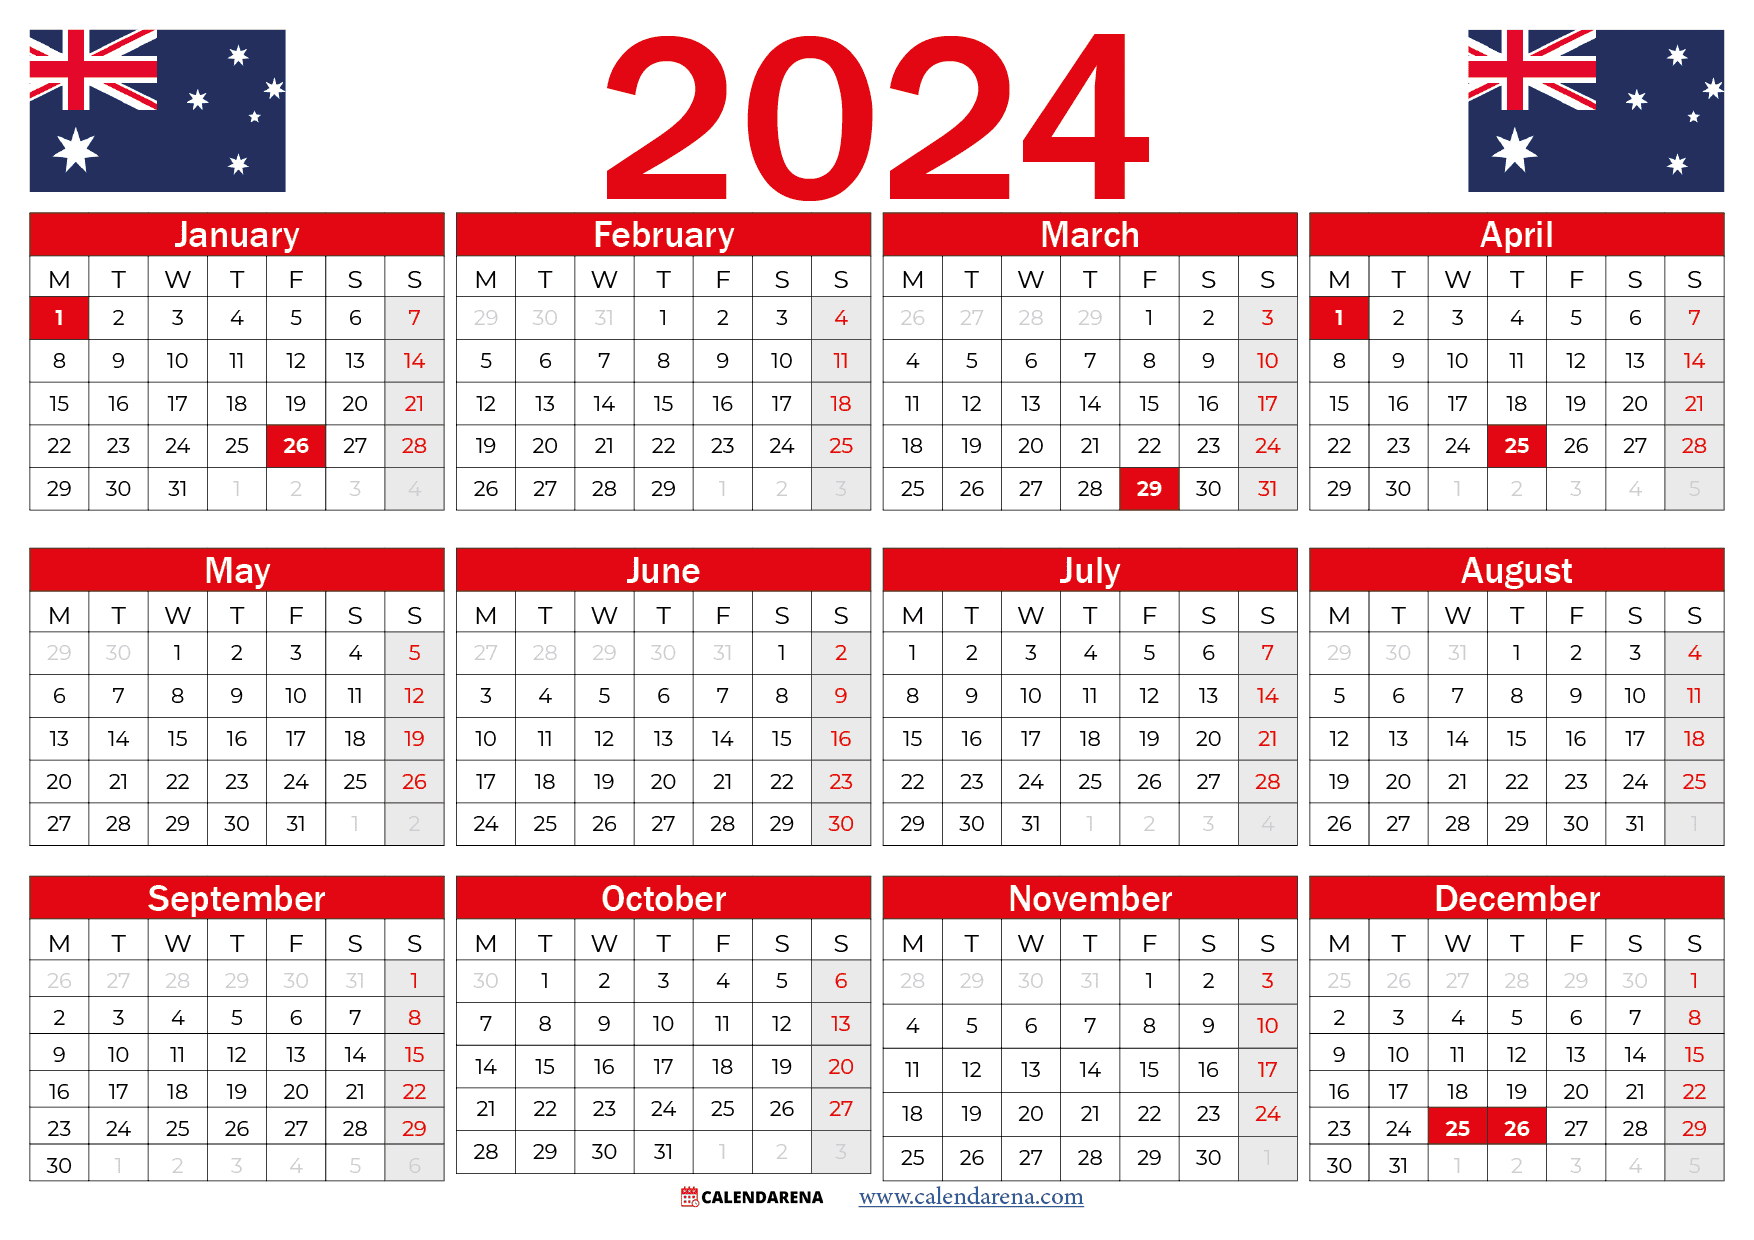 Calendar 2024 Australia With Holidays And Festivals | Free Printable Calendar 2024 Australia